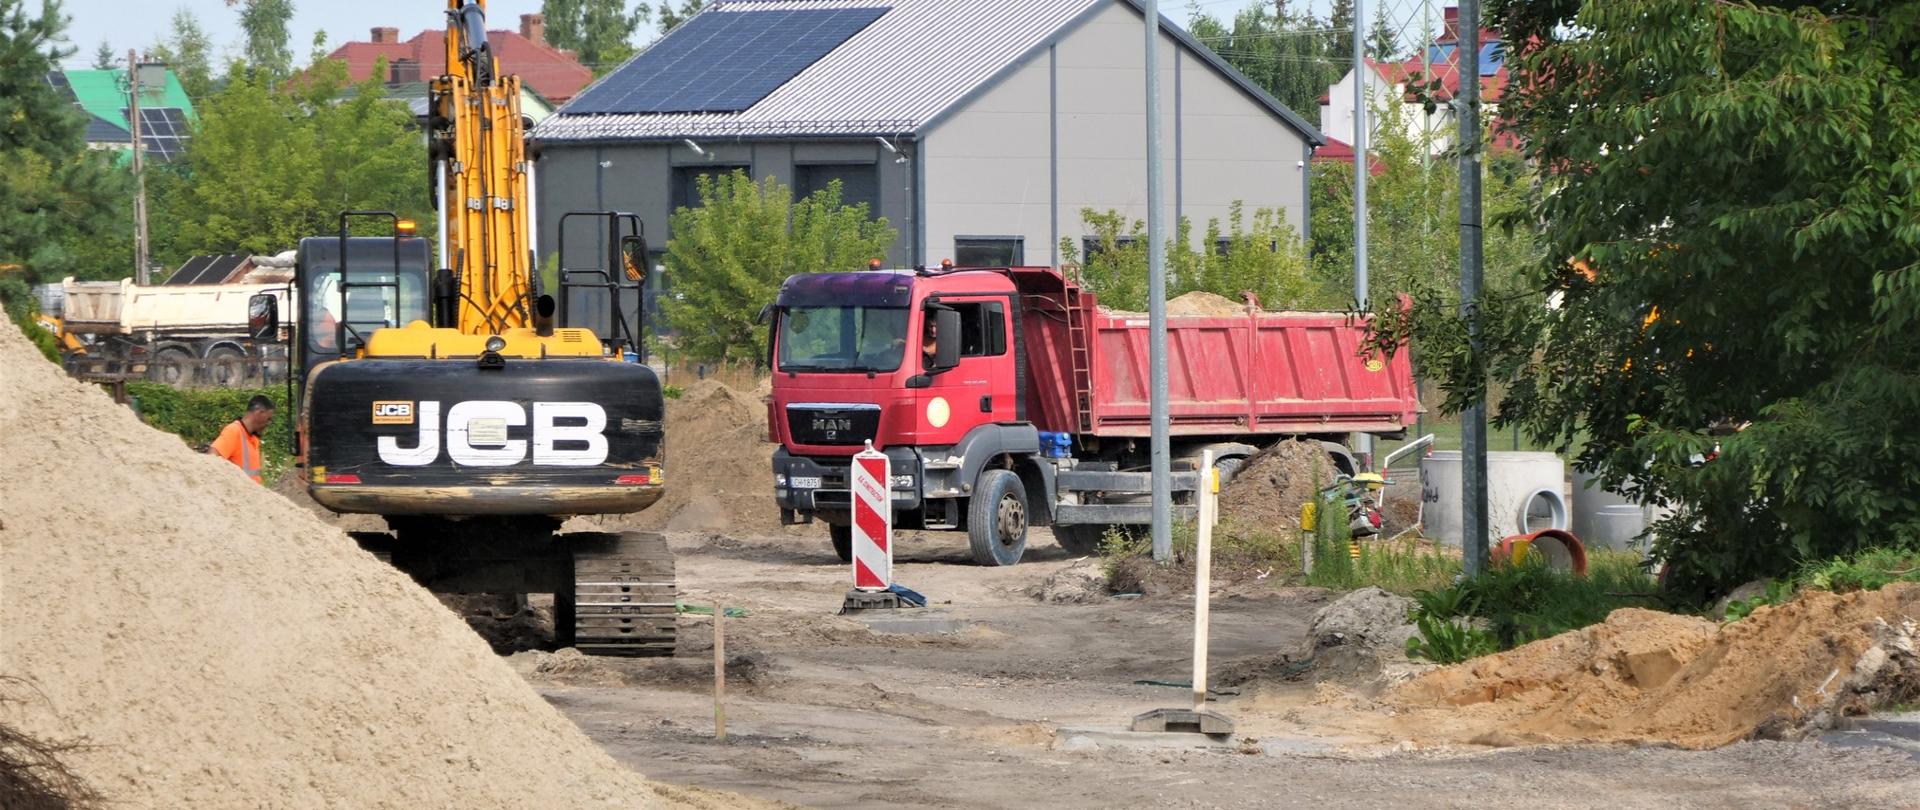 Zdjęcie przedstawia prace budowlane na drodze. Na rozkopanym odcinku drogi stoi koparka oraz ciężarówka